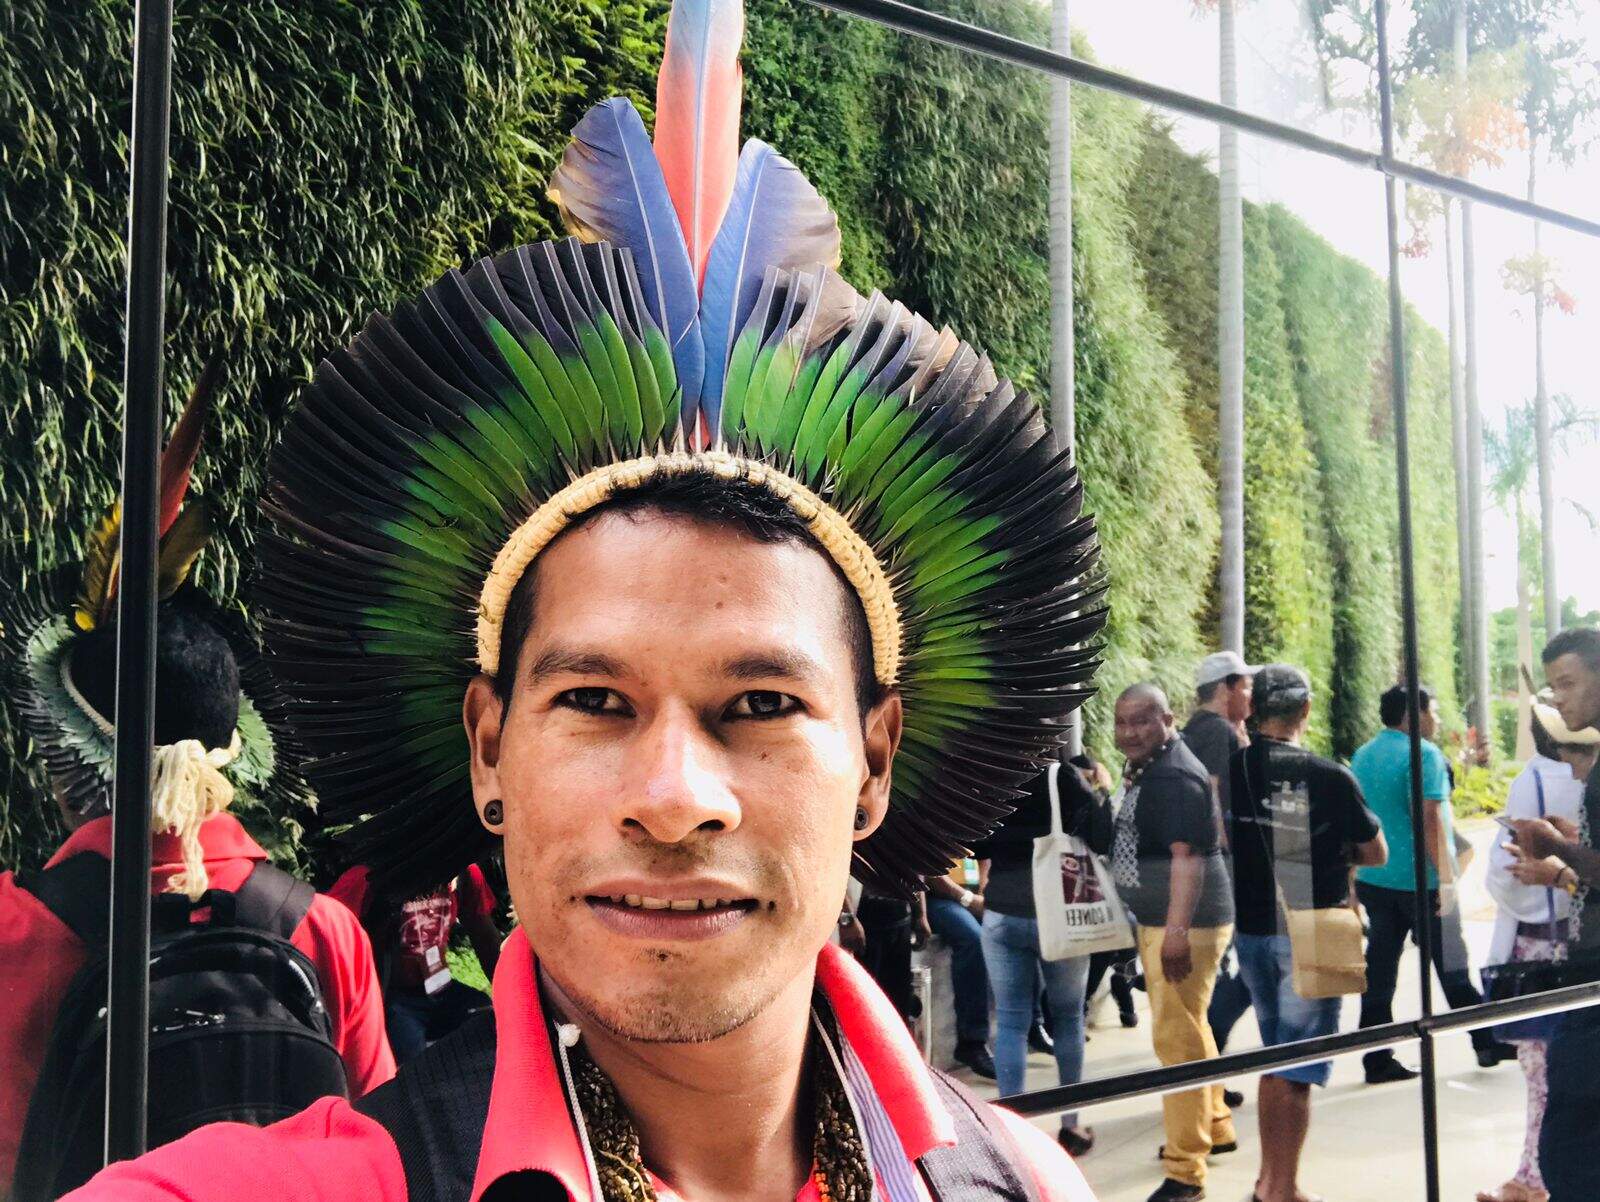 Fotografia colorida de Siwe, homem indígena com cocar na cabeça, ao fundo outras pessoas.